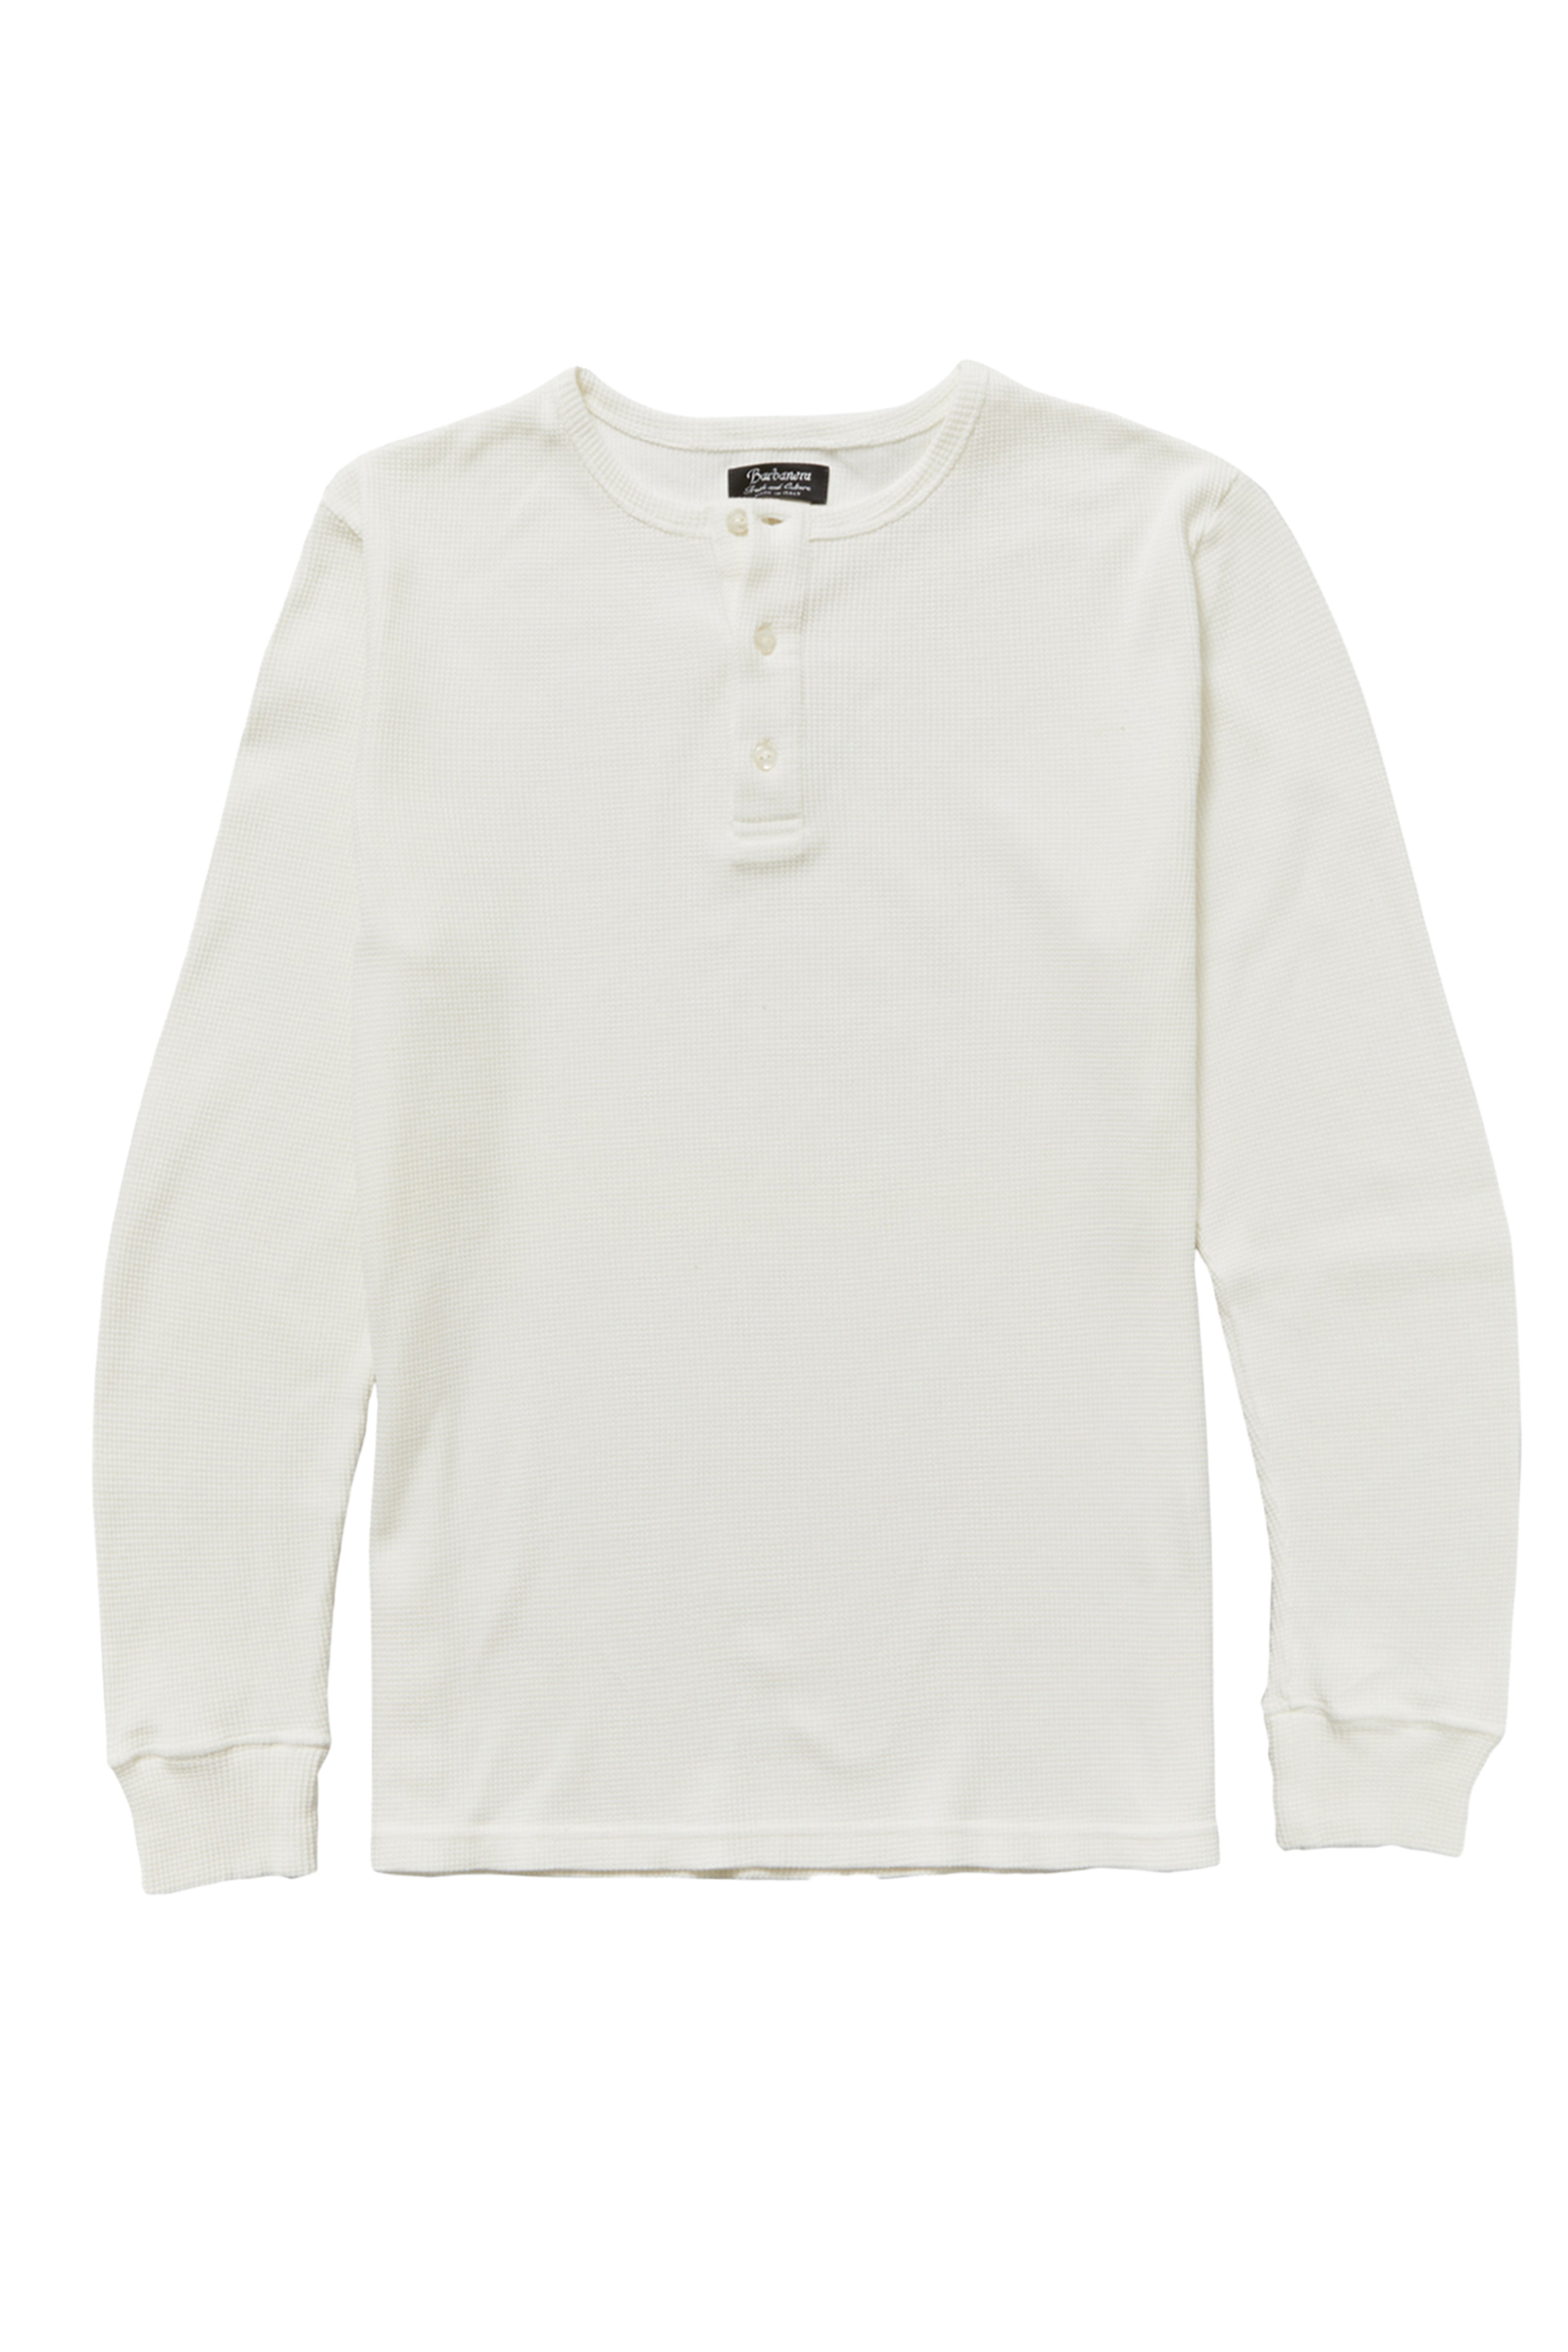 Tuco White Waffle Knit Cotton Henley Shirt - Barbanera